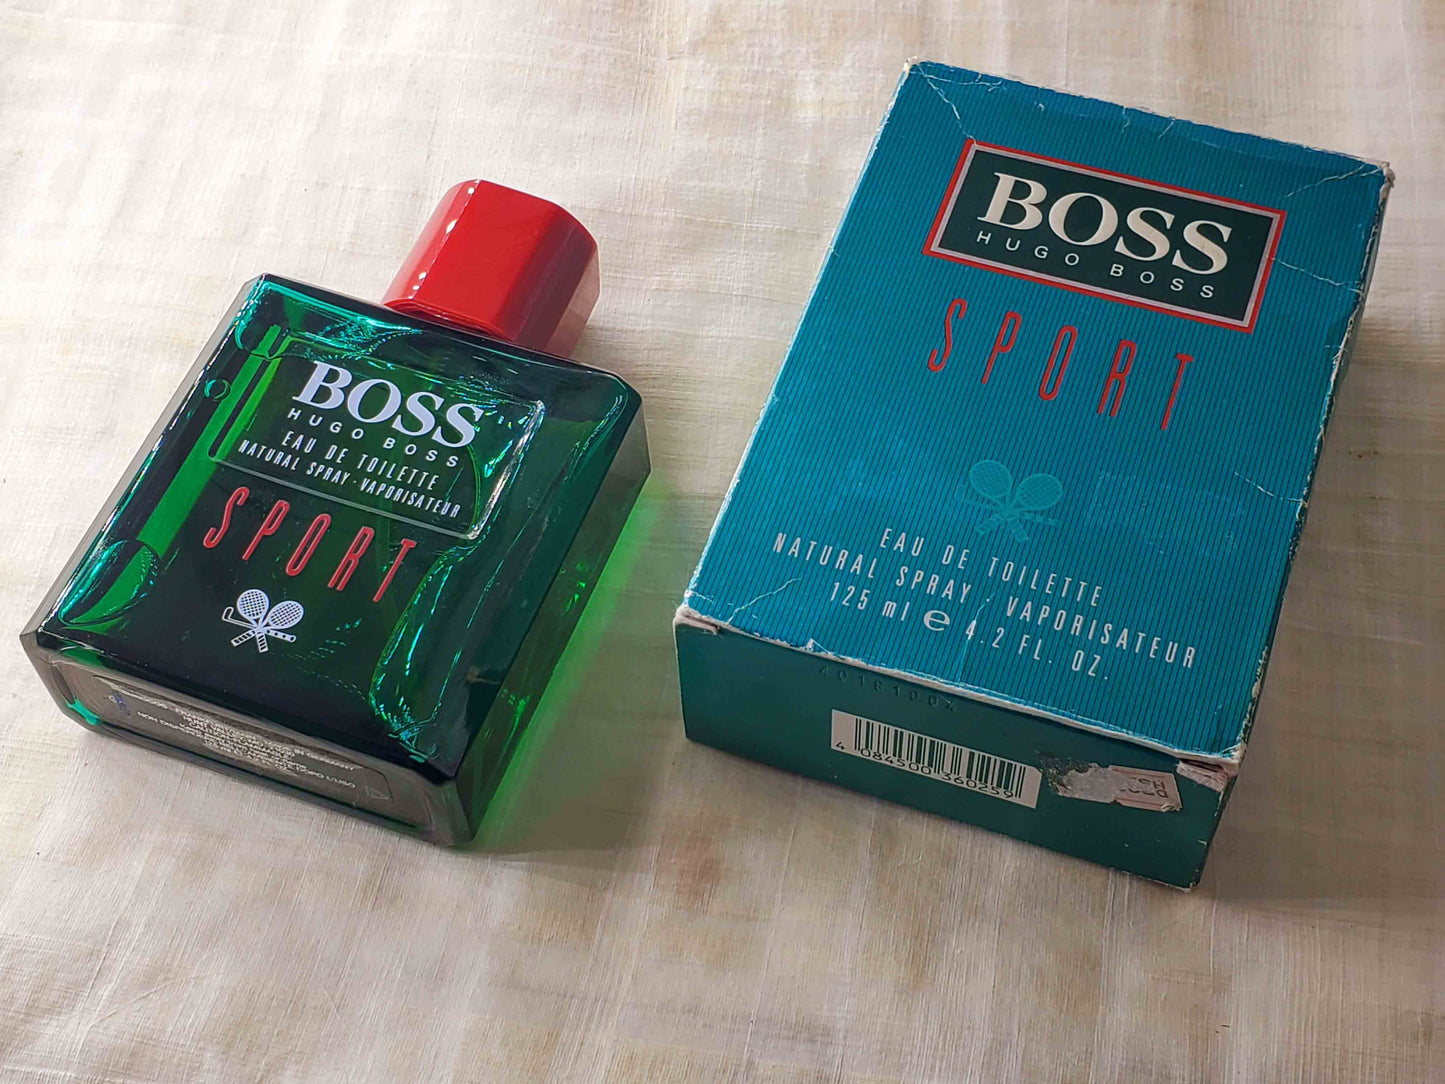 Hugo Boss Sport EDT Spray 125 ml 4.2 oz, Vintage, Rare